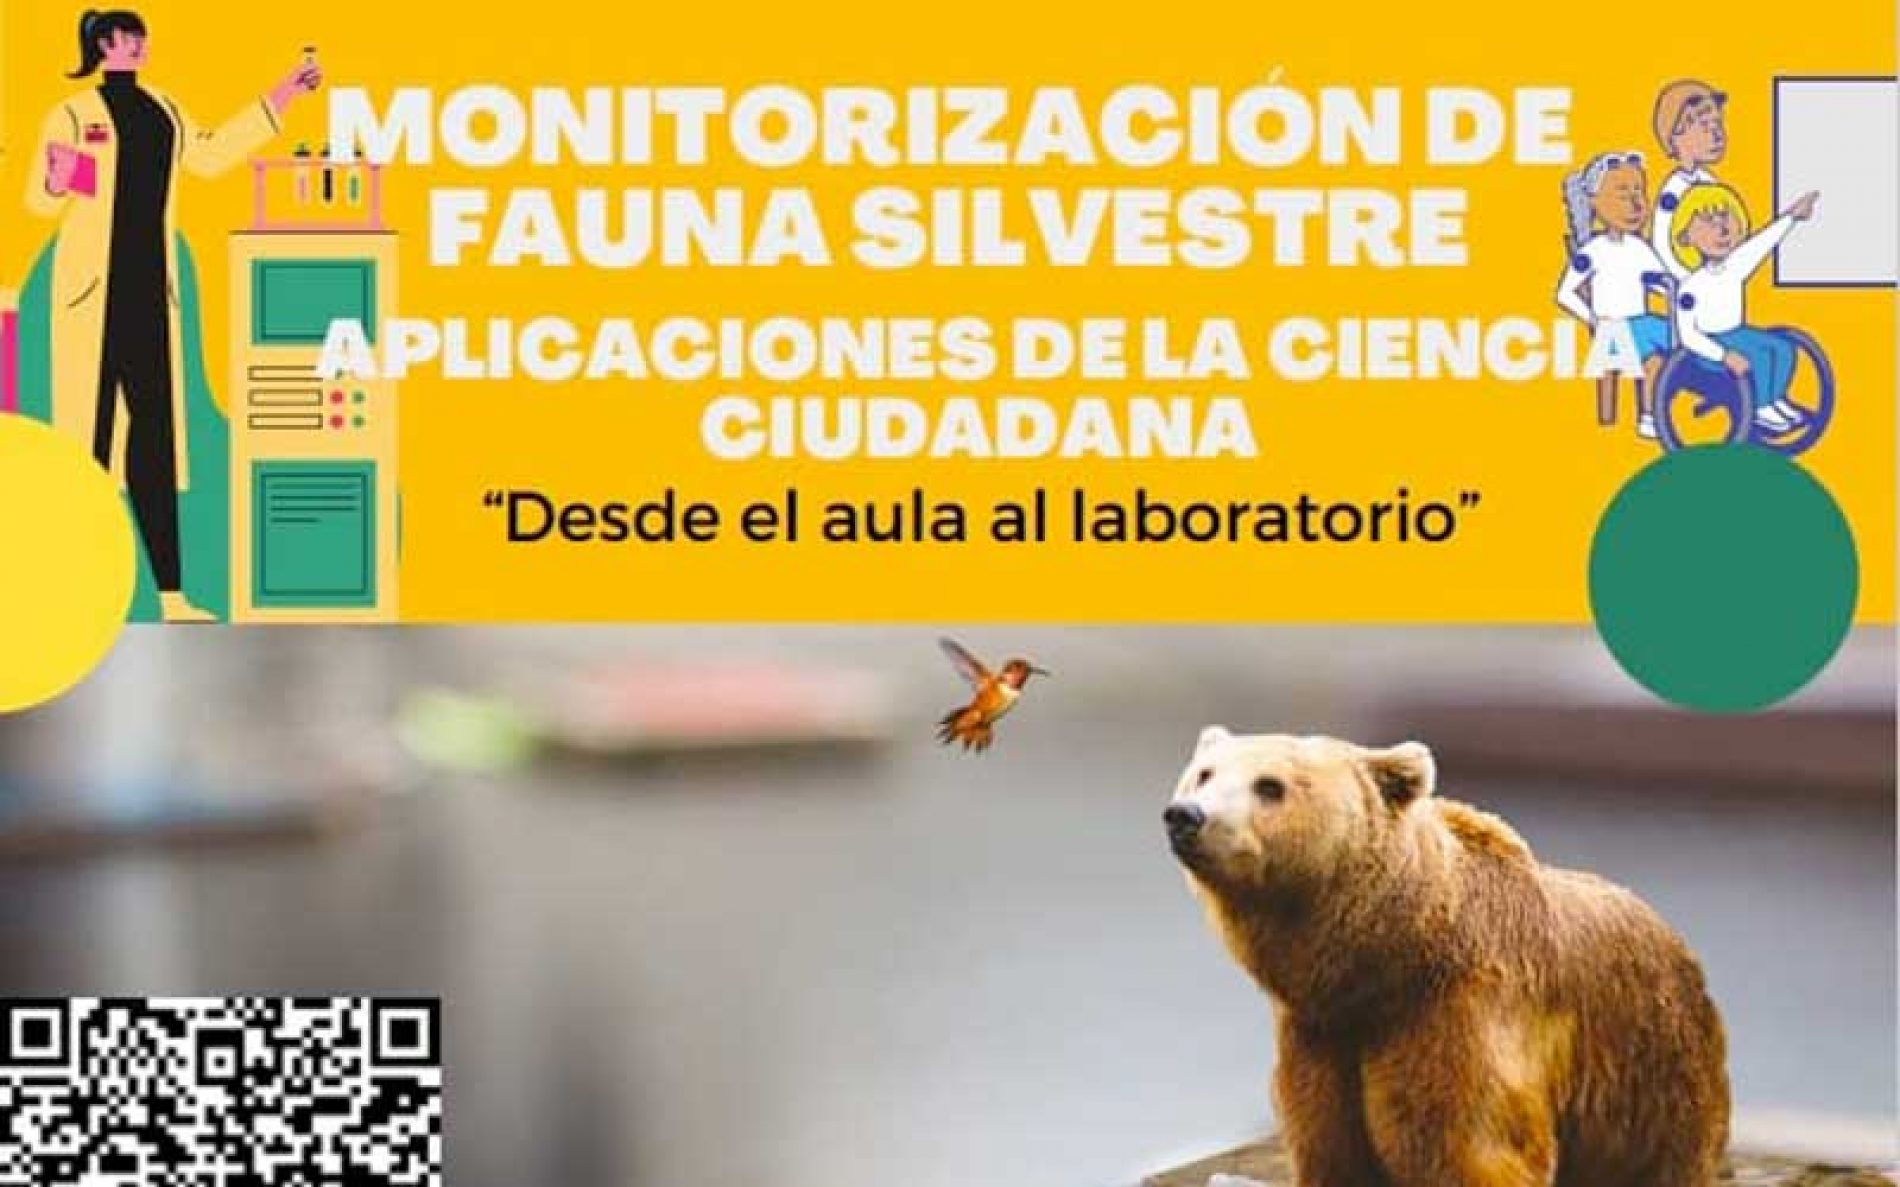 El IREC organiza un curso sobre monitorización de fauna silvestre y ciencia ciudadana